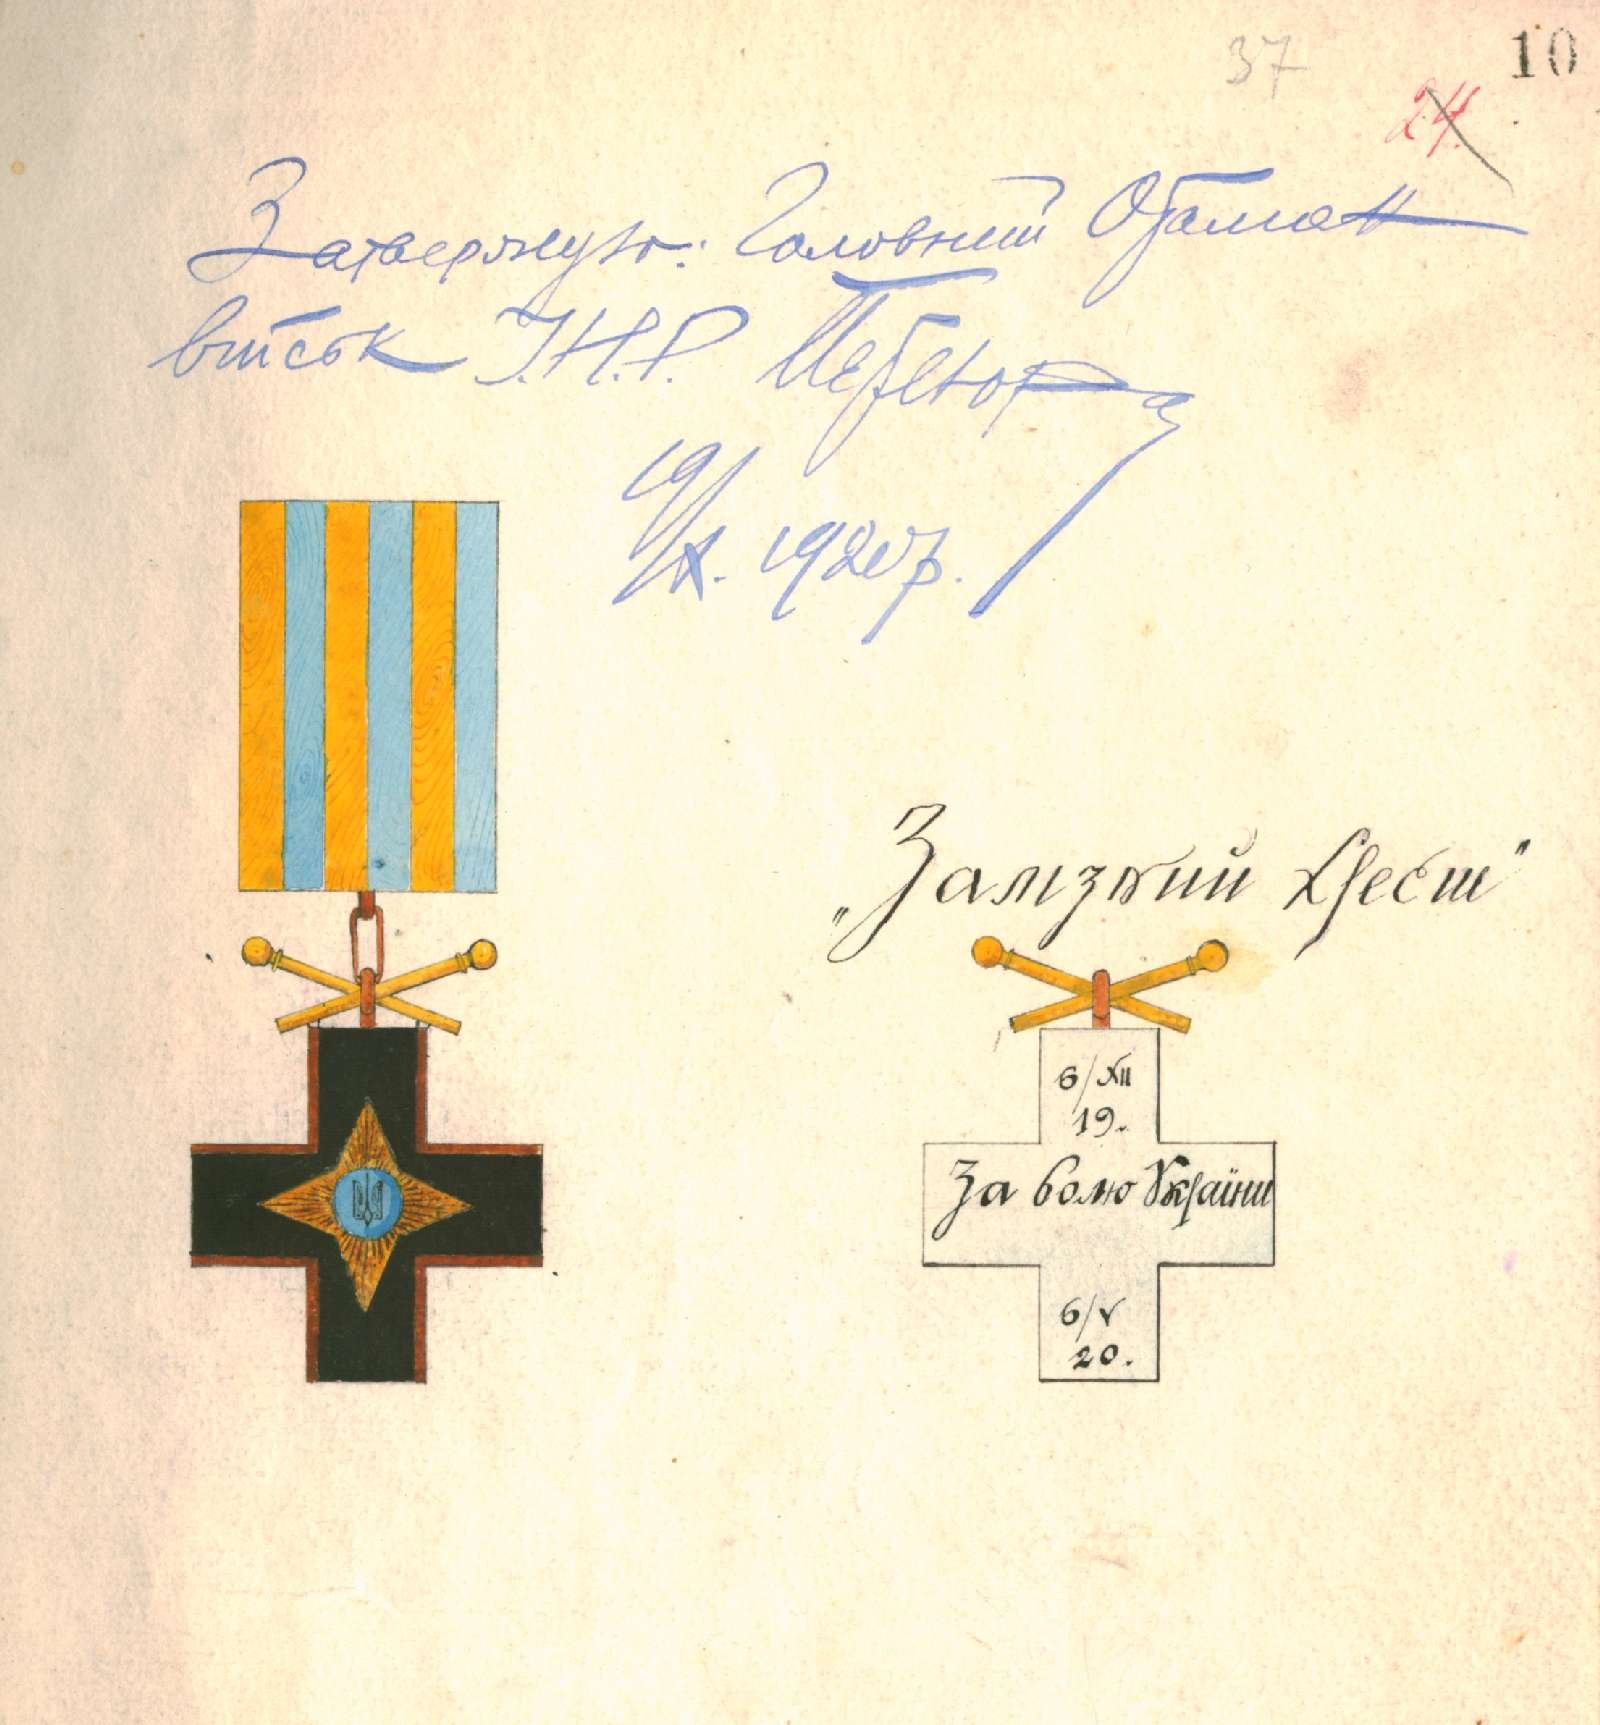 Малюнок ордену “Залізний Хрест”, затверджений Головним Отаманом військ Української Народної Республіки С. Петлюрою. 19 жовтня 1920 р.